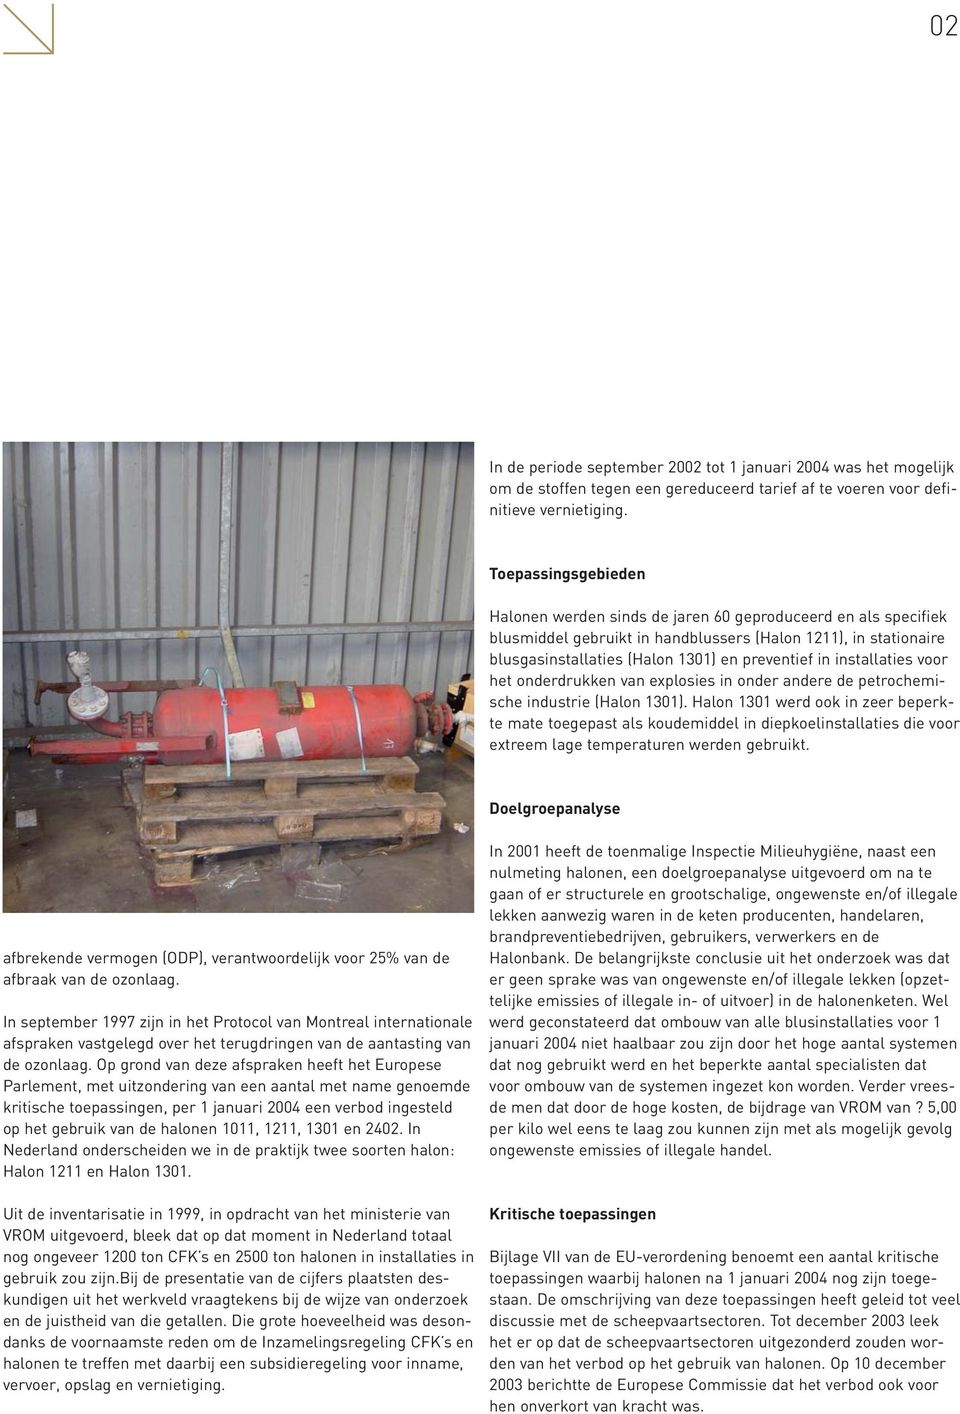 installaties voor het onderdrukken van explosies in onder andere de petrochemische industrie (Halon 1301).